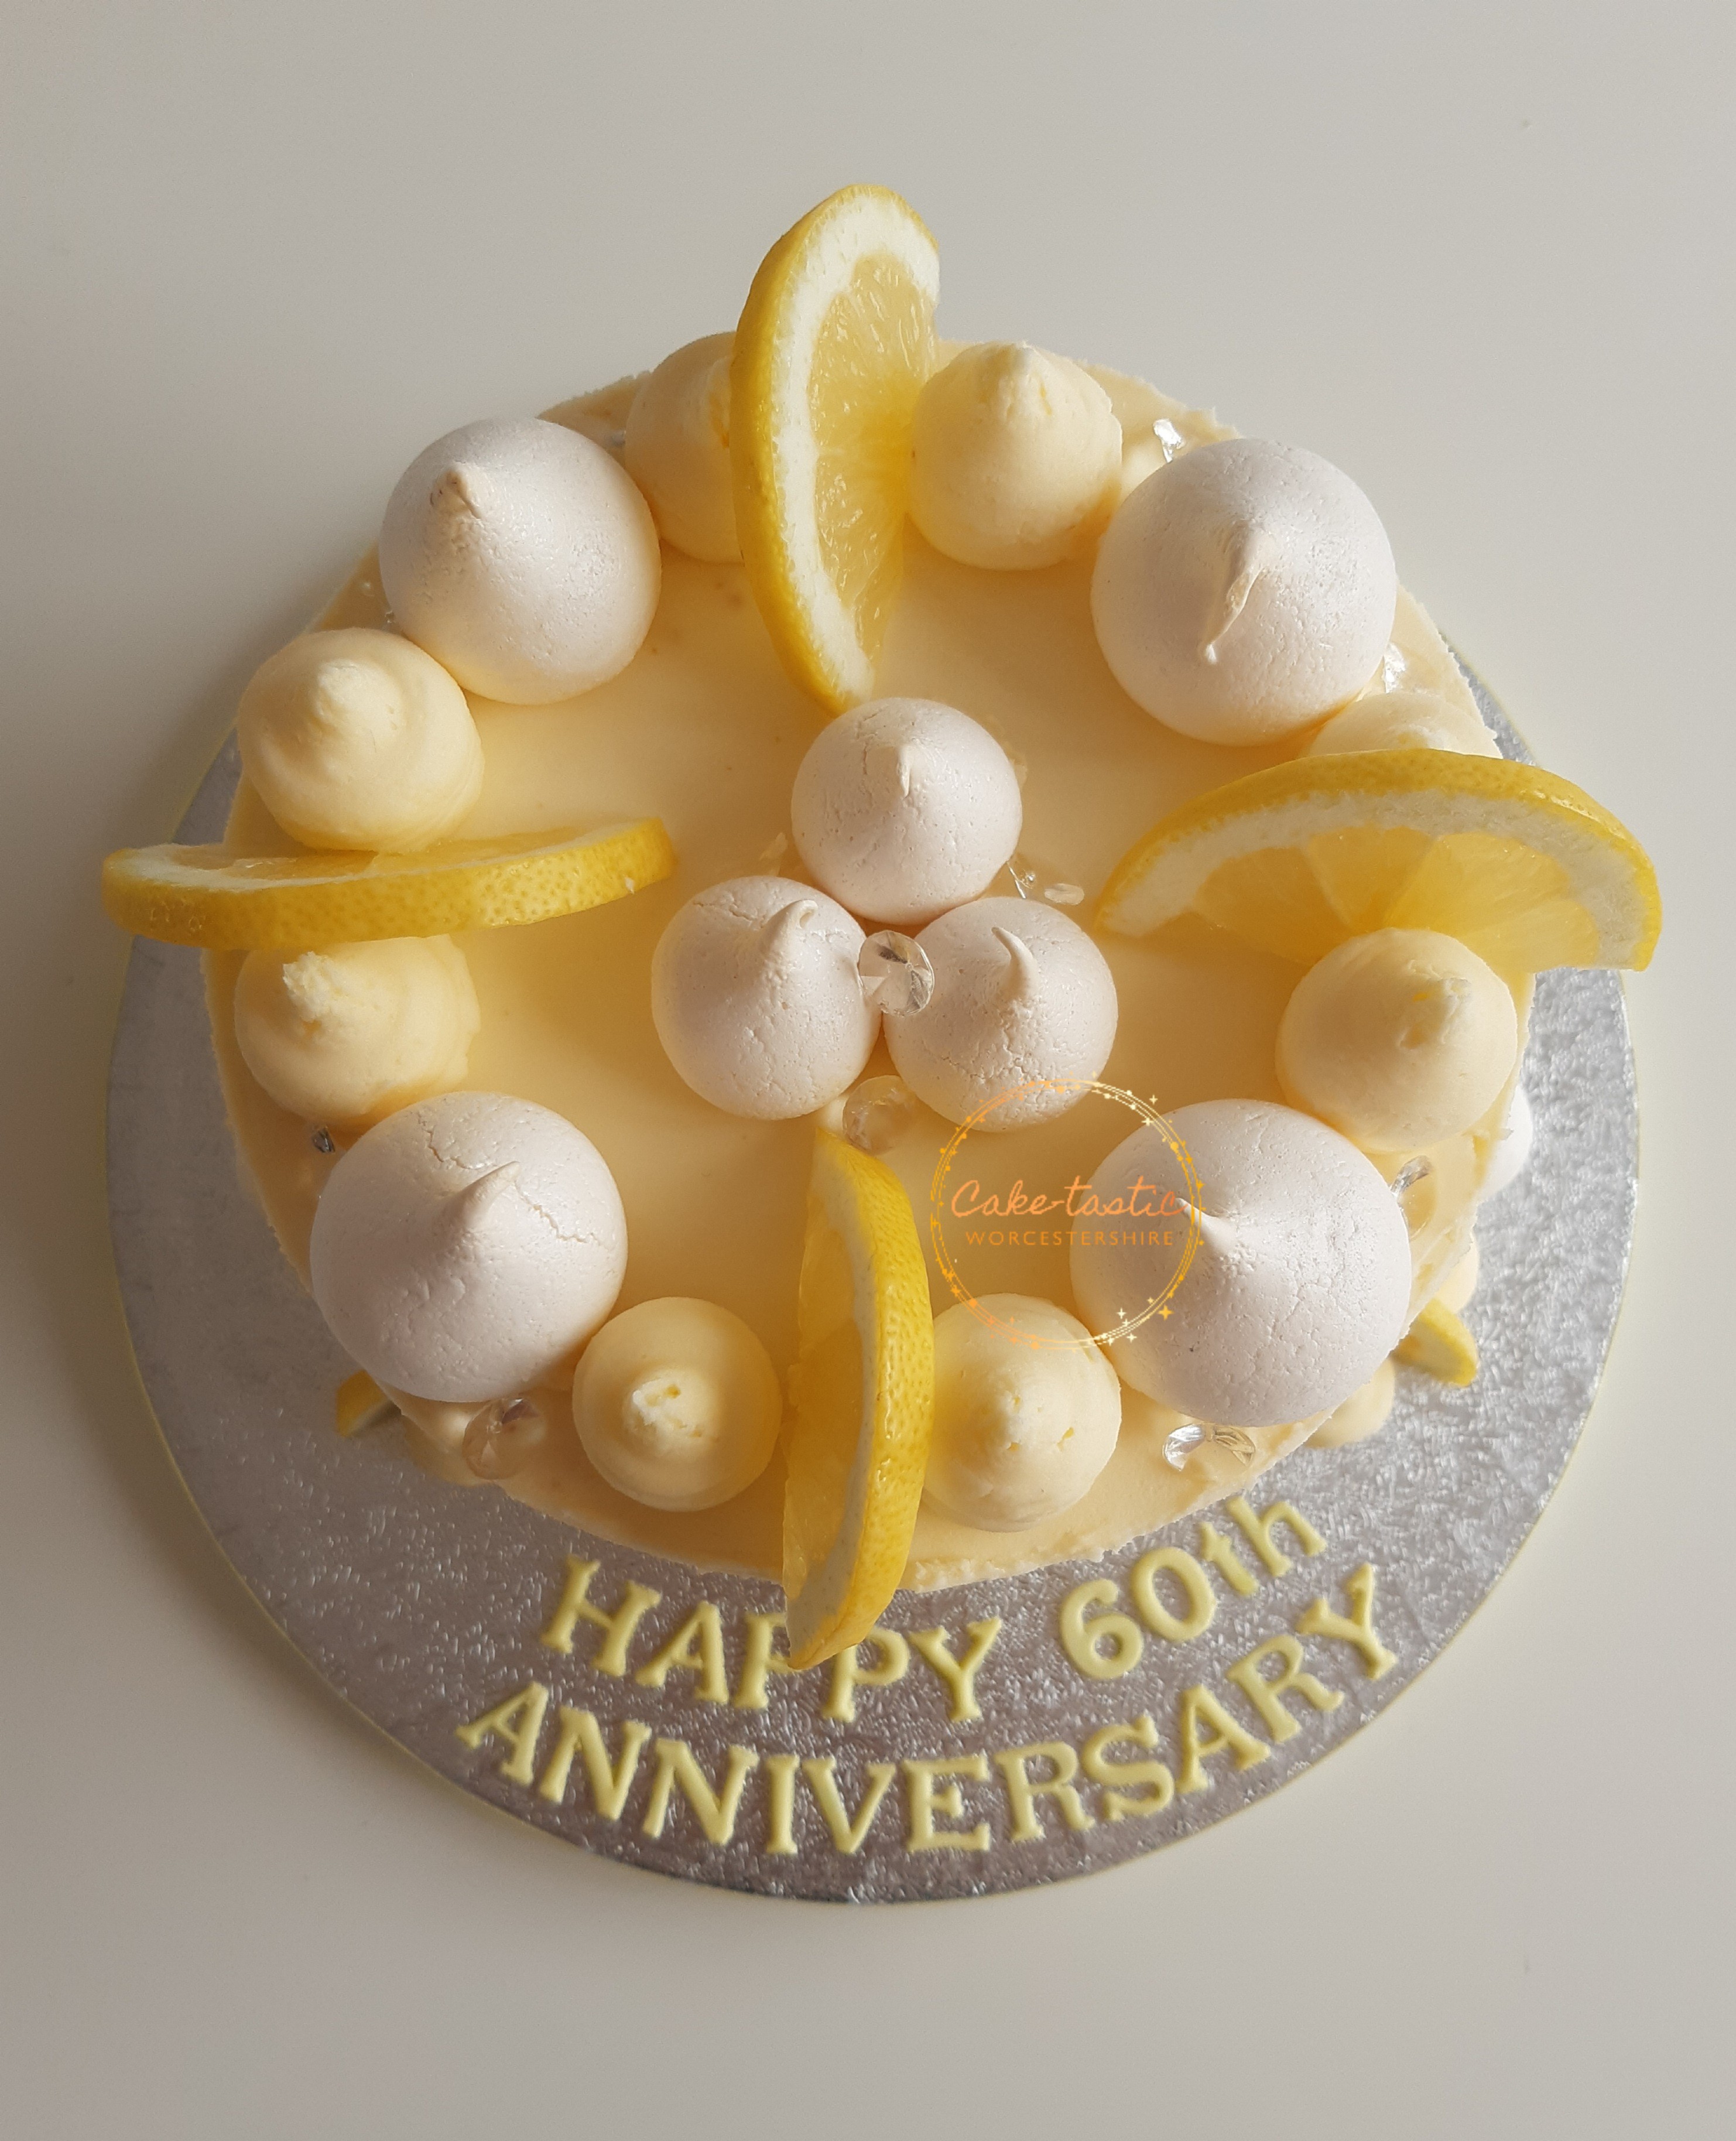 Lemon Meringue Anniversary Cake